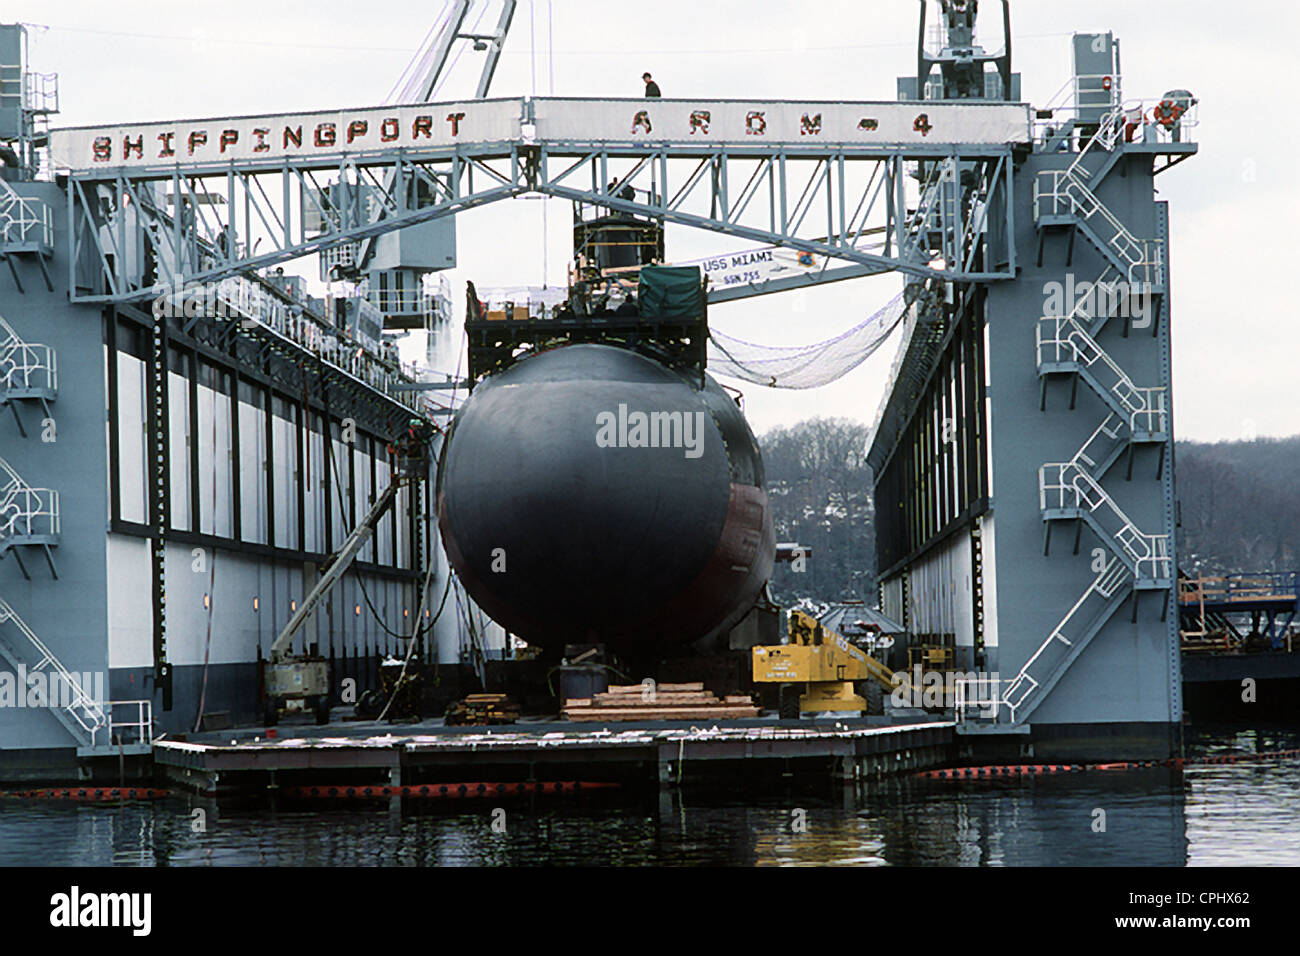 Il Los Angeles-classe alimentato nucleare attacco rapido sommergibile USS Miami (SSN 755) nel bacino di carenaggio durante una routine di ispezione dello scafo Marzo 16, 1994 a Groton, CT. Foto Stock